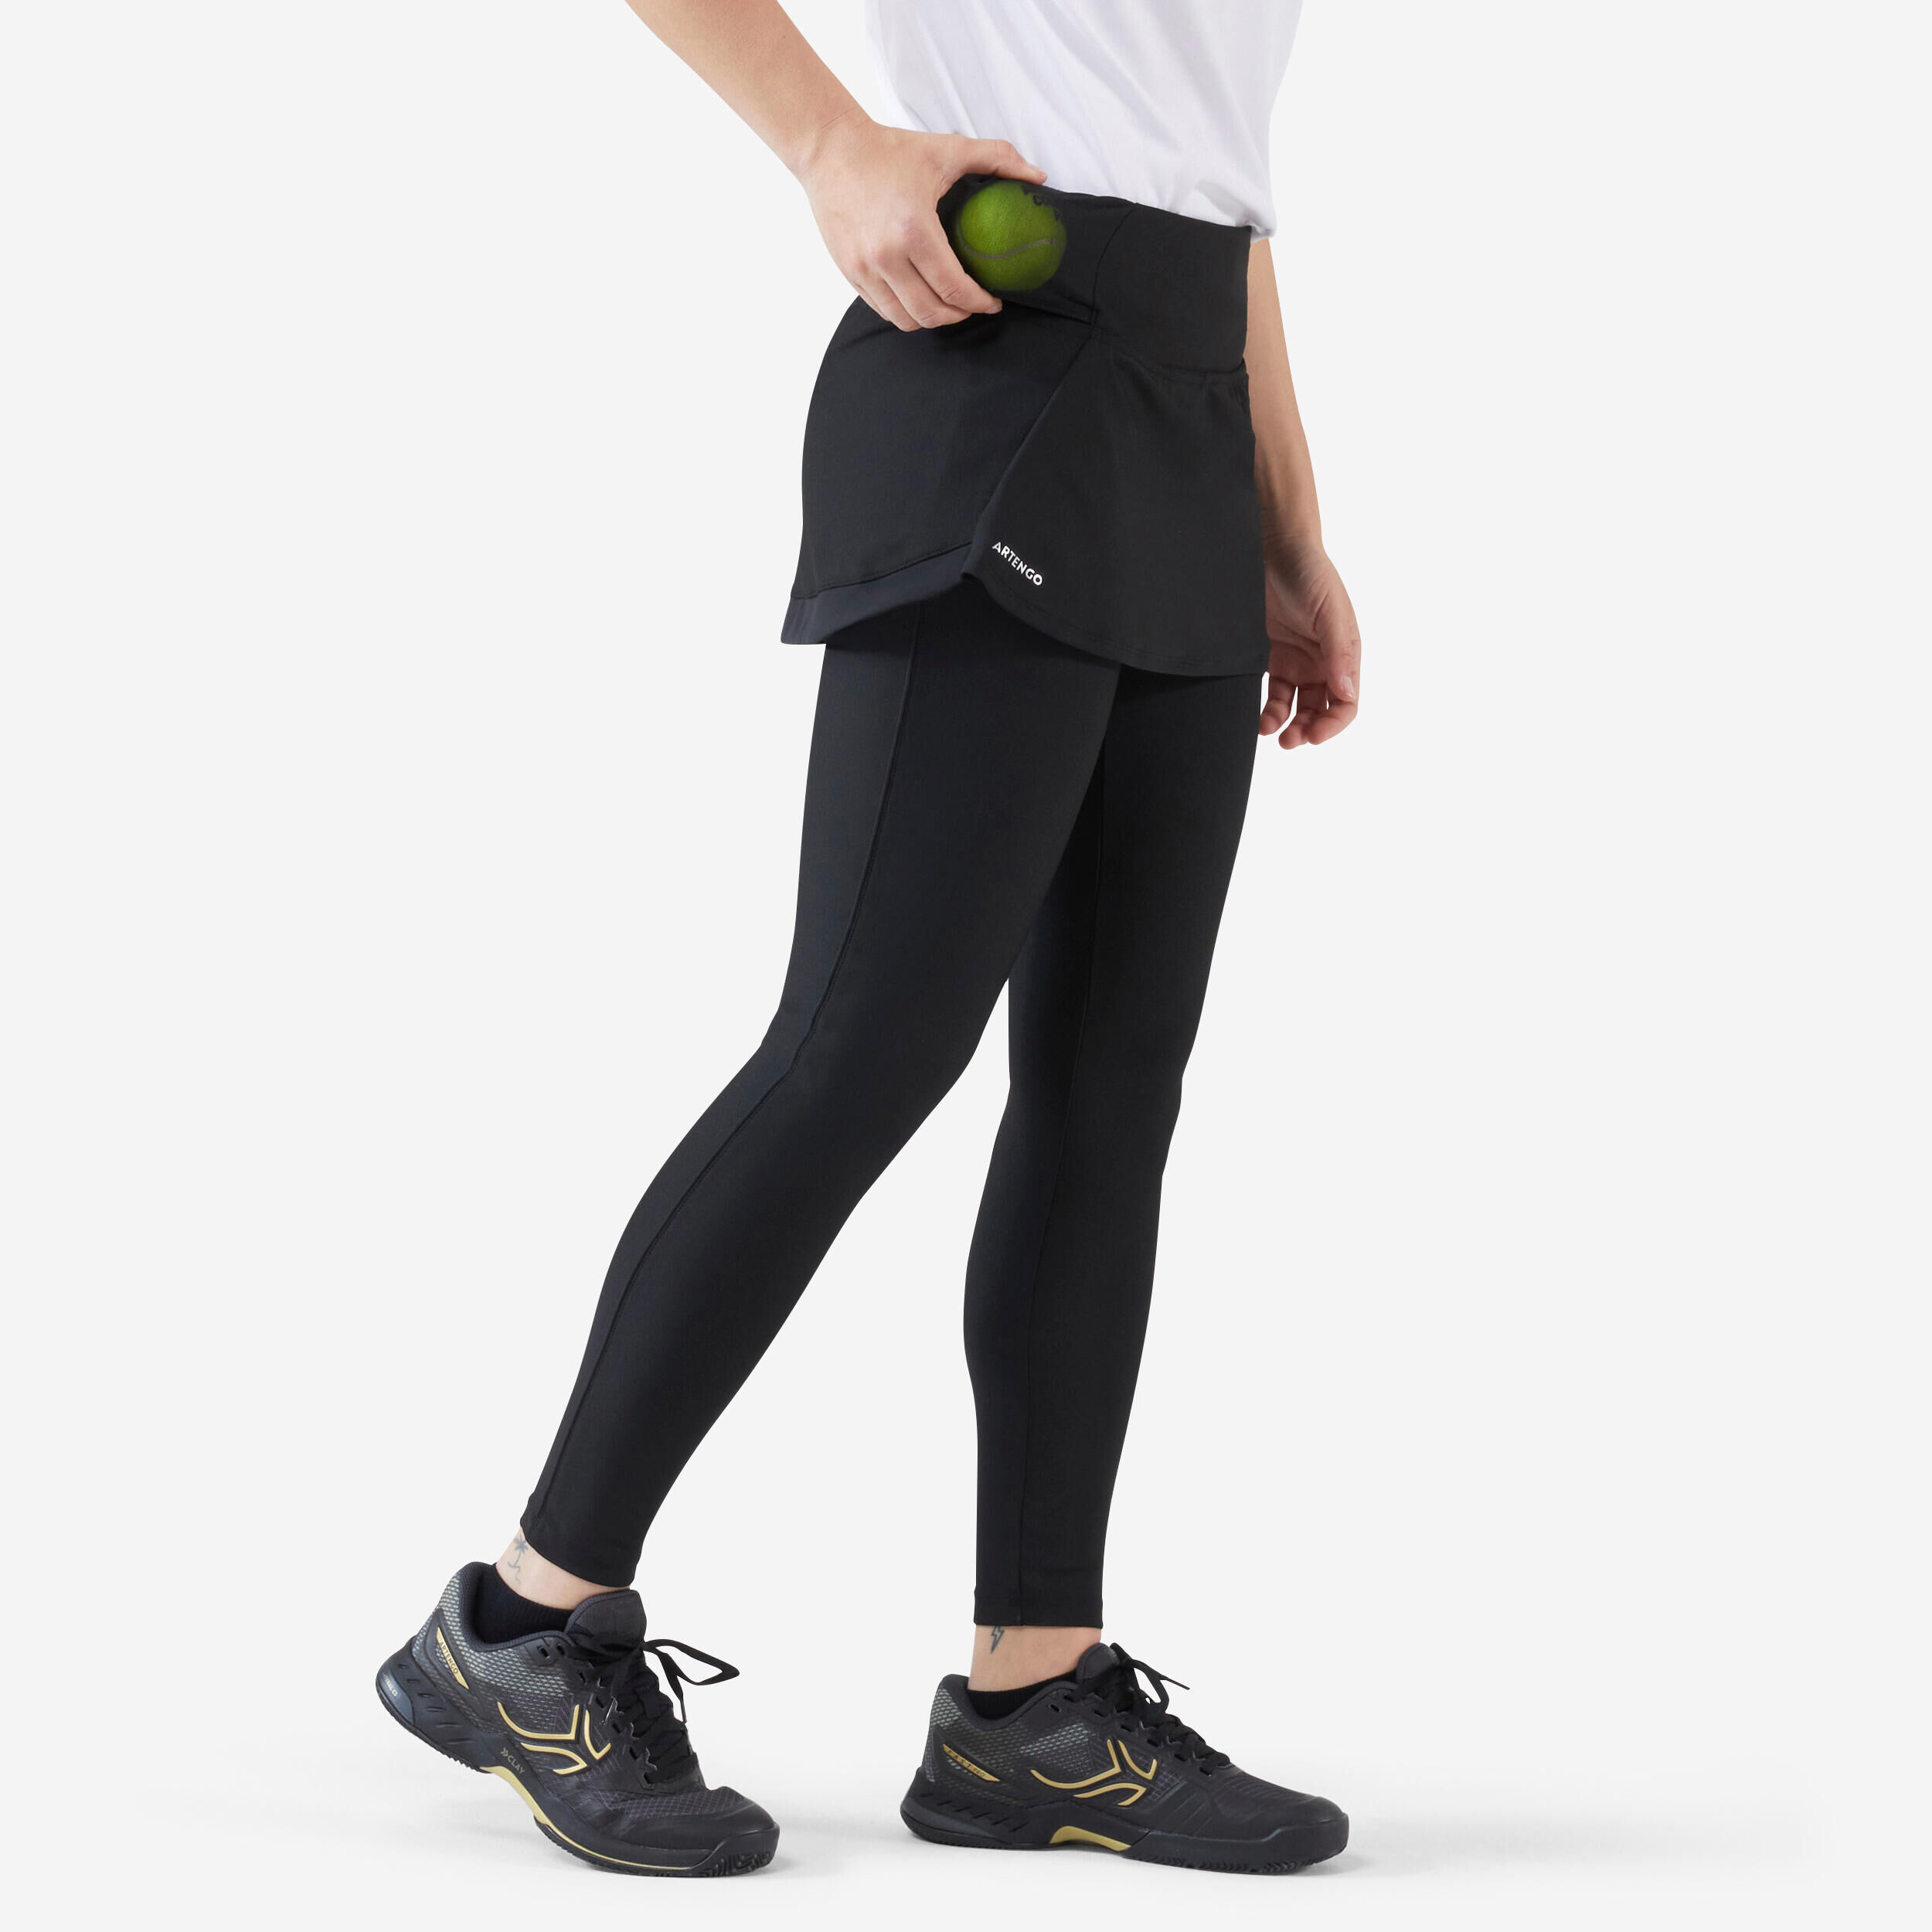 ARTENGO Women's Tennis Hip Ball Skirt + Leggings Dry - Black